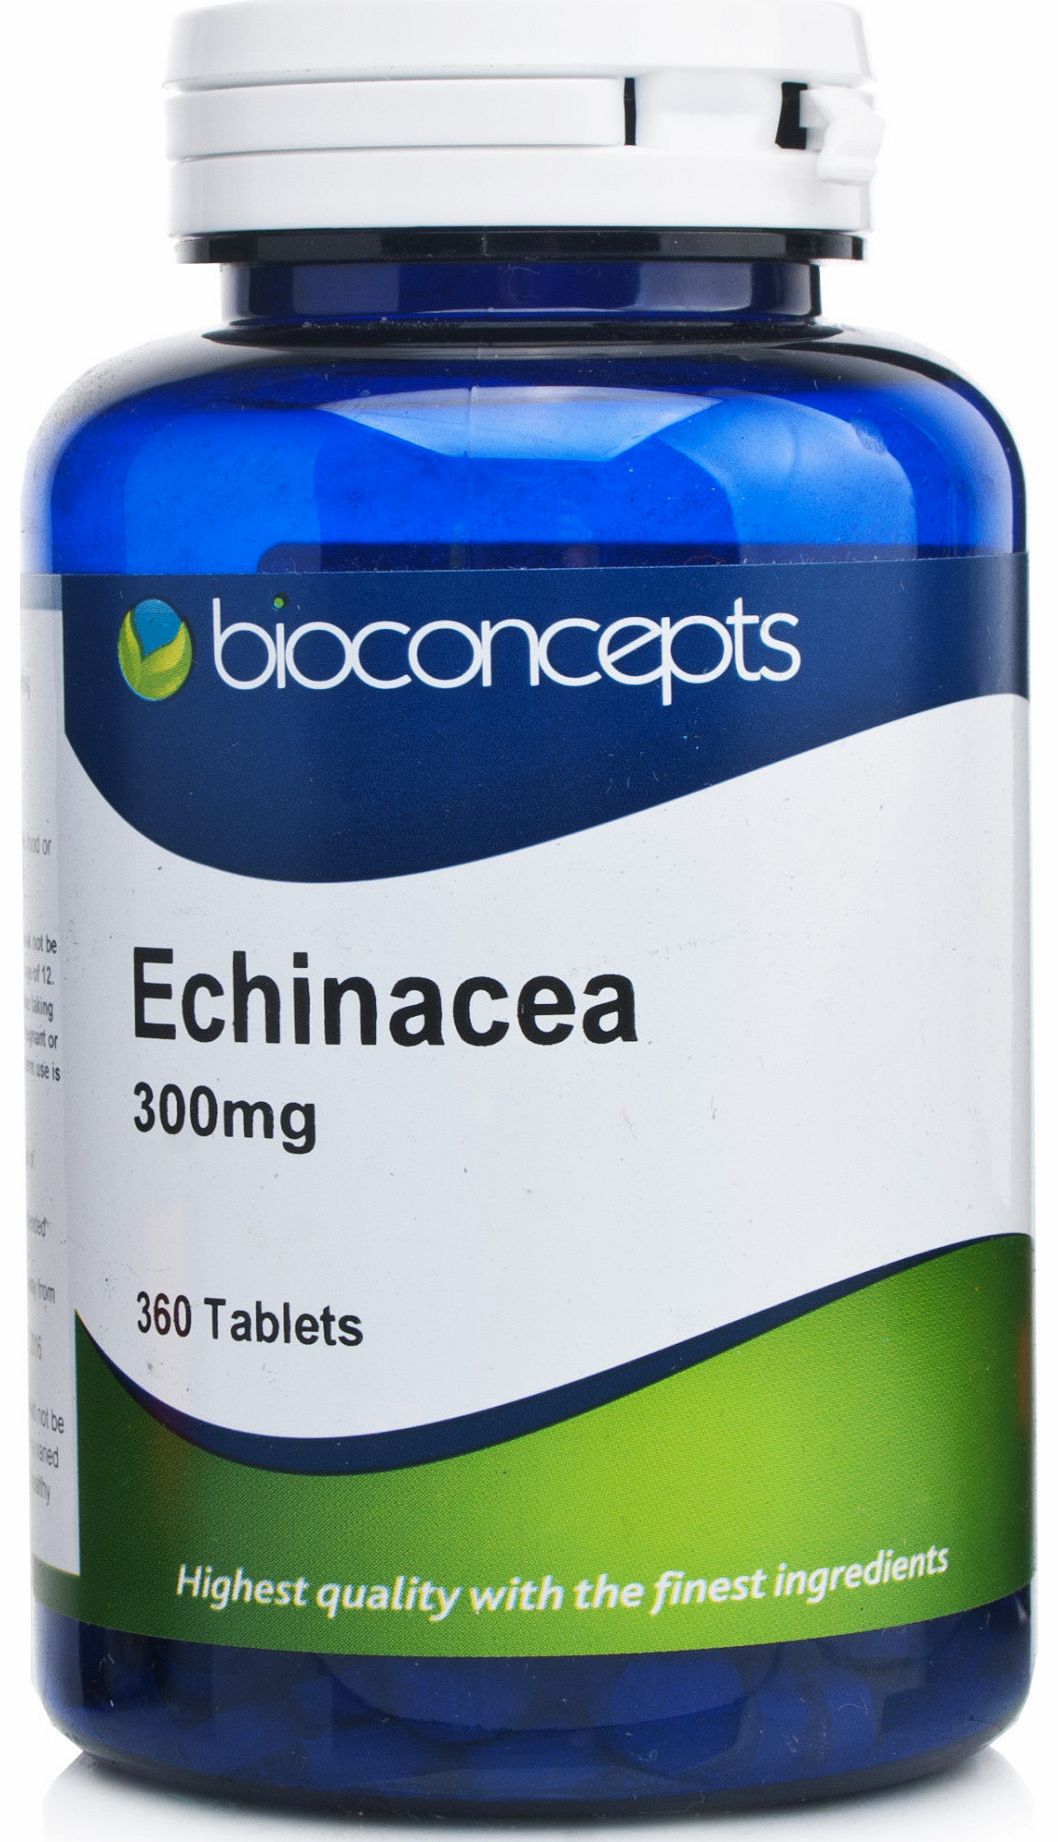 Echinacea 300mg